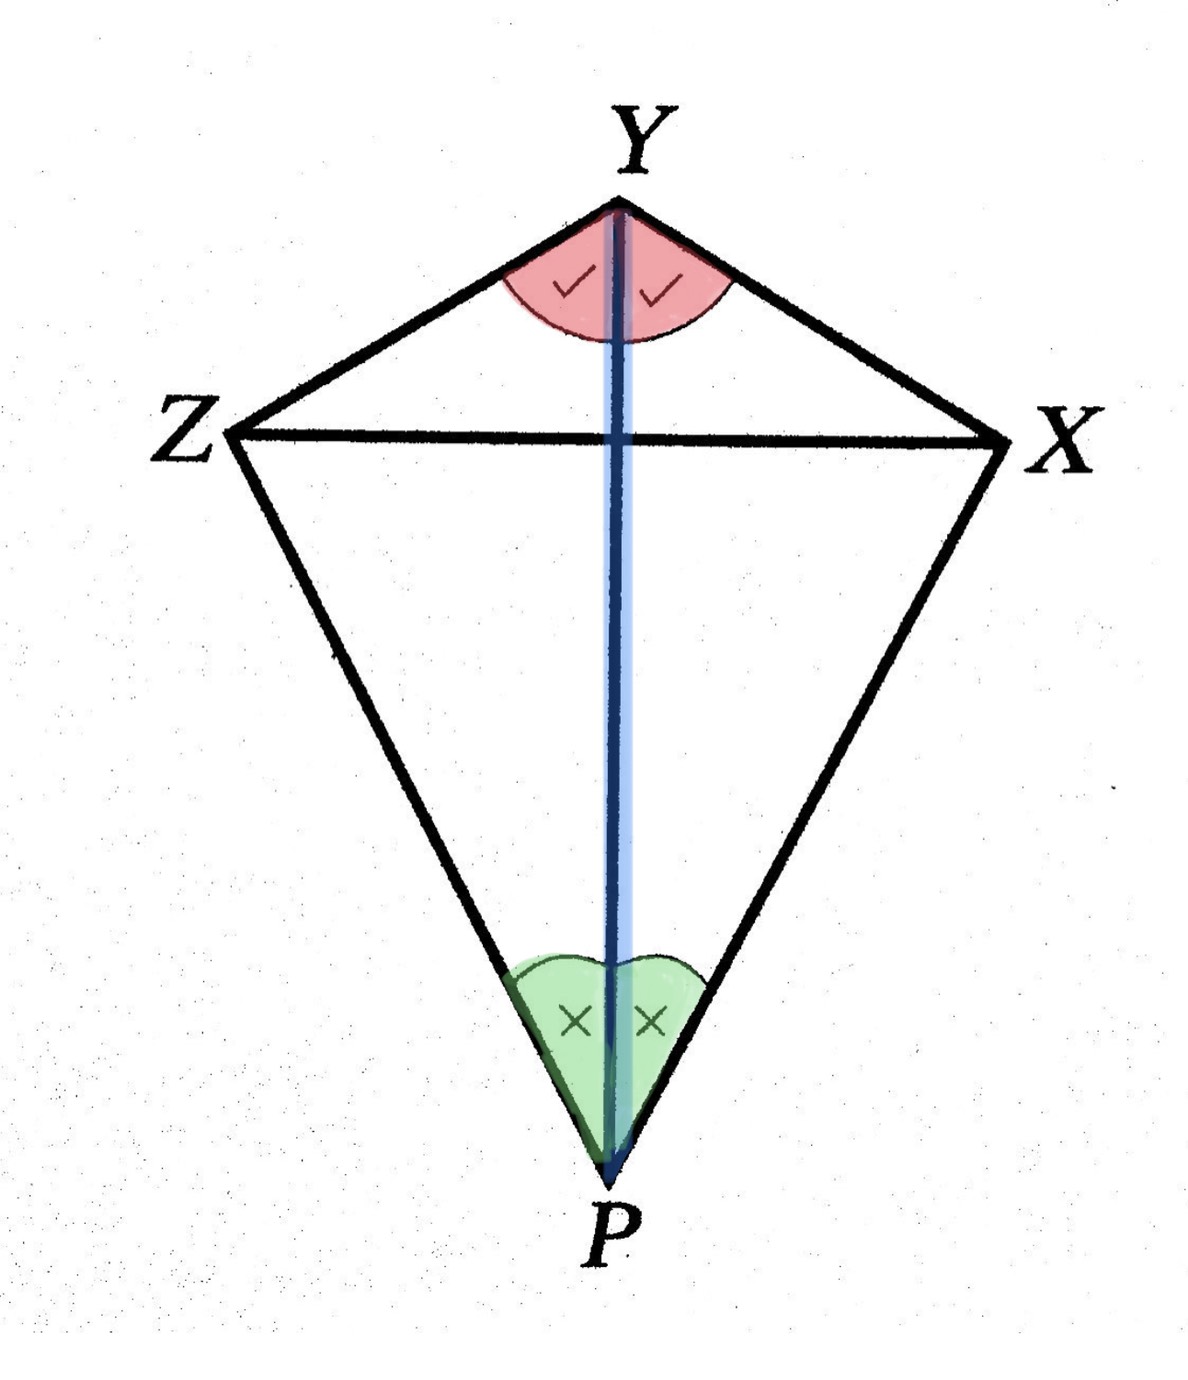 สามเหลี่ยมที่เท่ากันทุกประการแบบ มุม-ด้าน-มุม